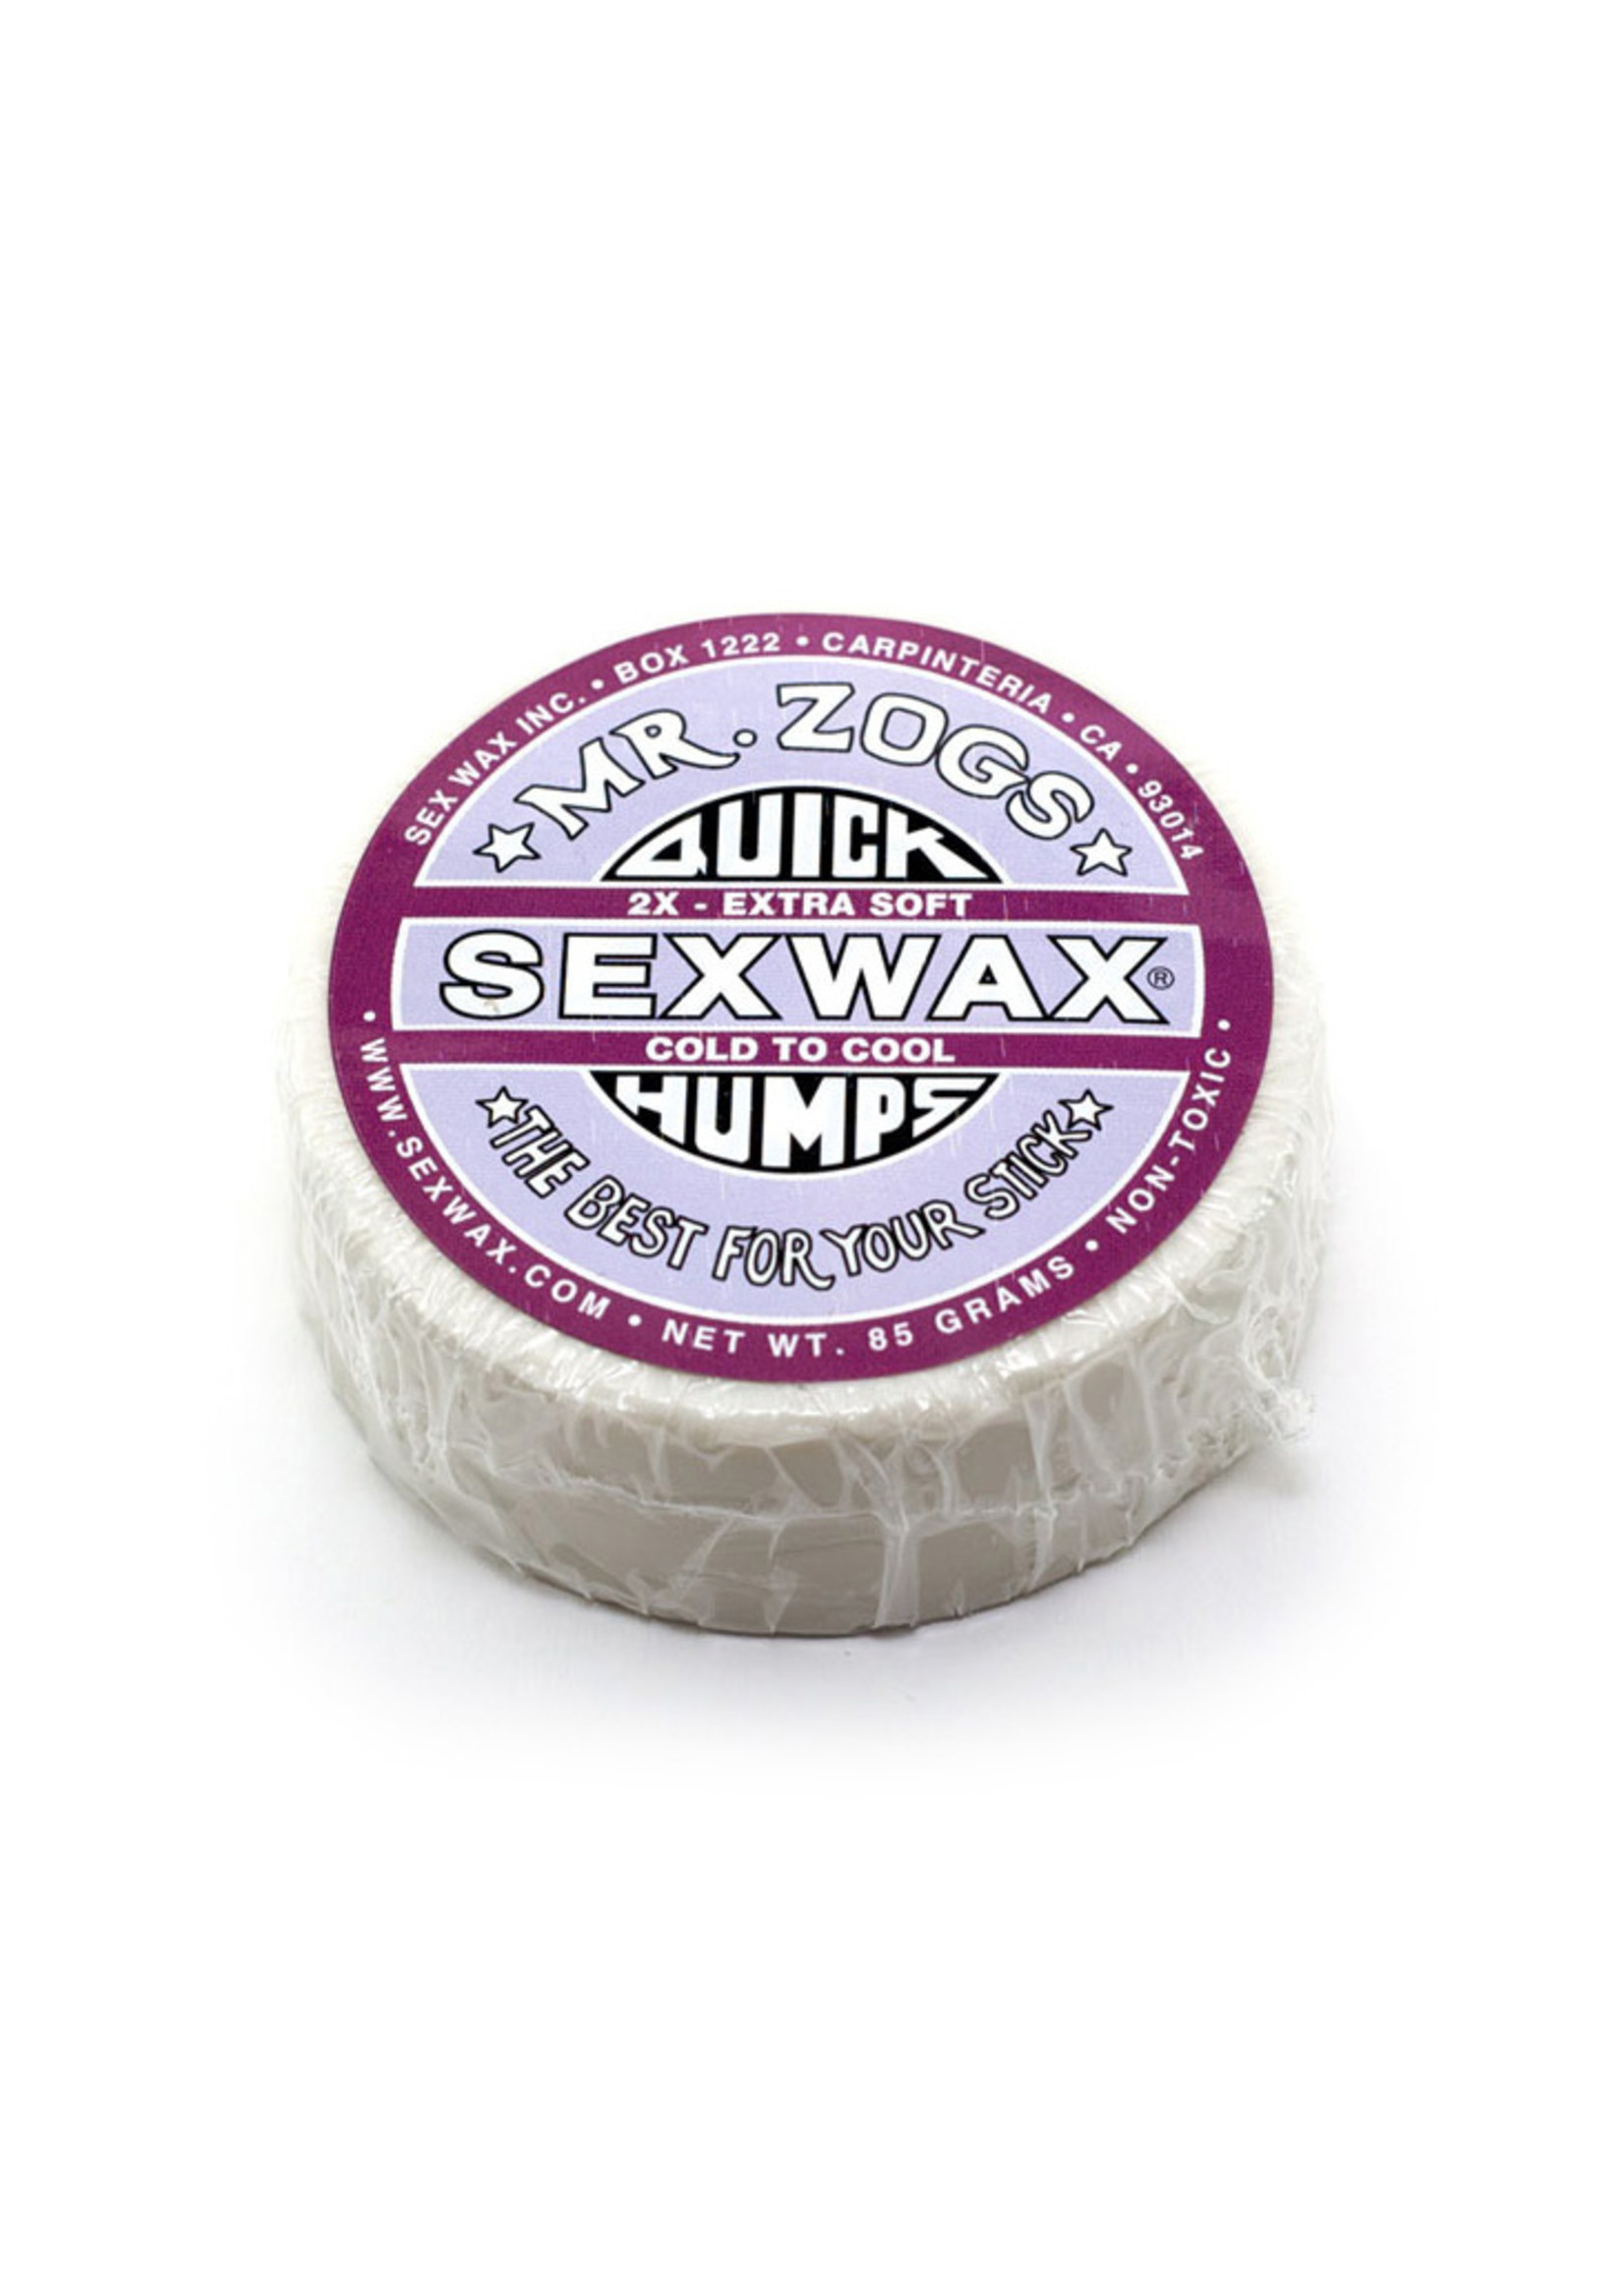 Sex Wax Sex Wax Quick Humps Surf Wax